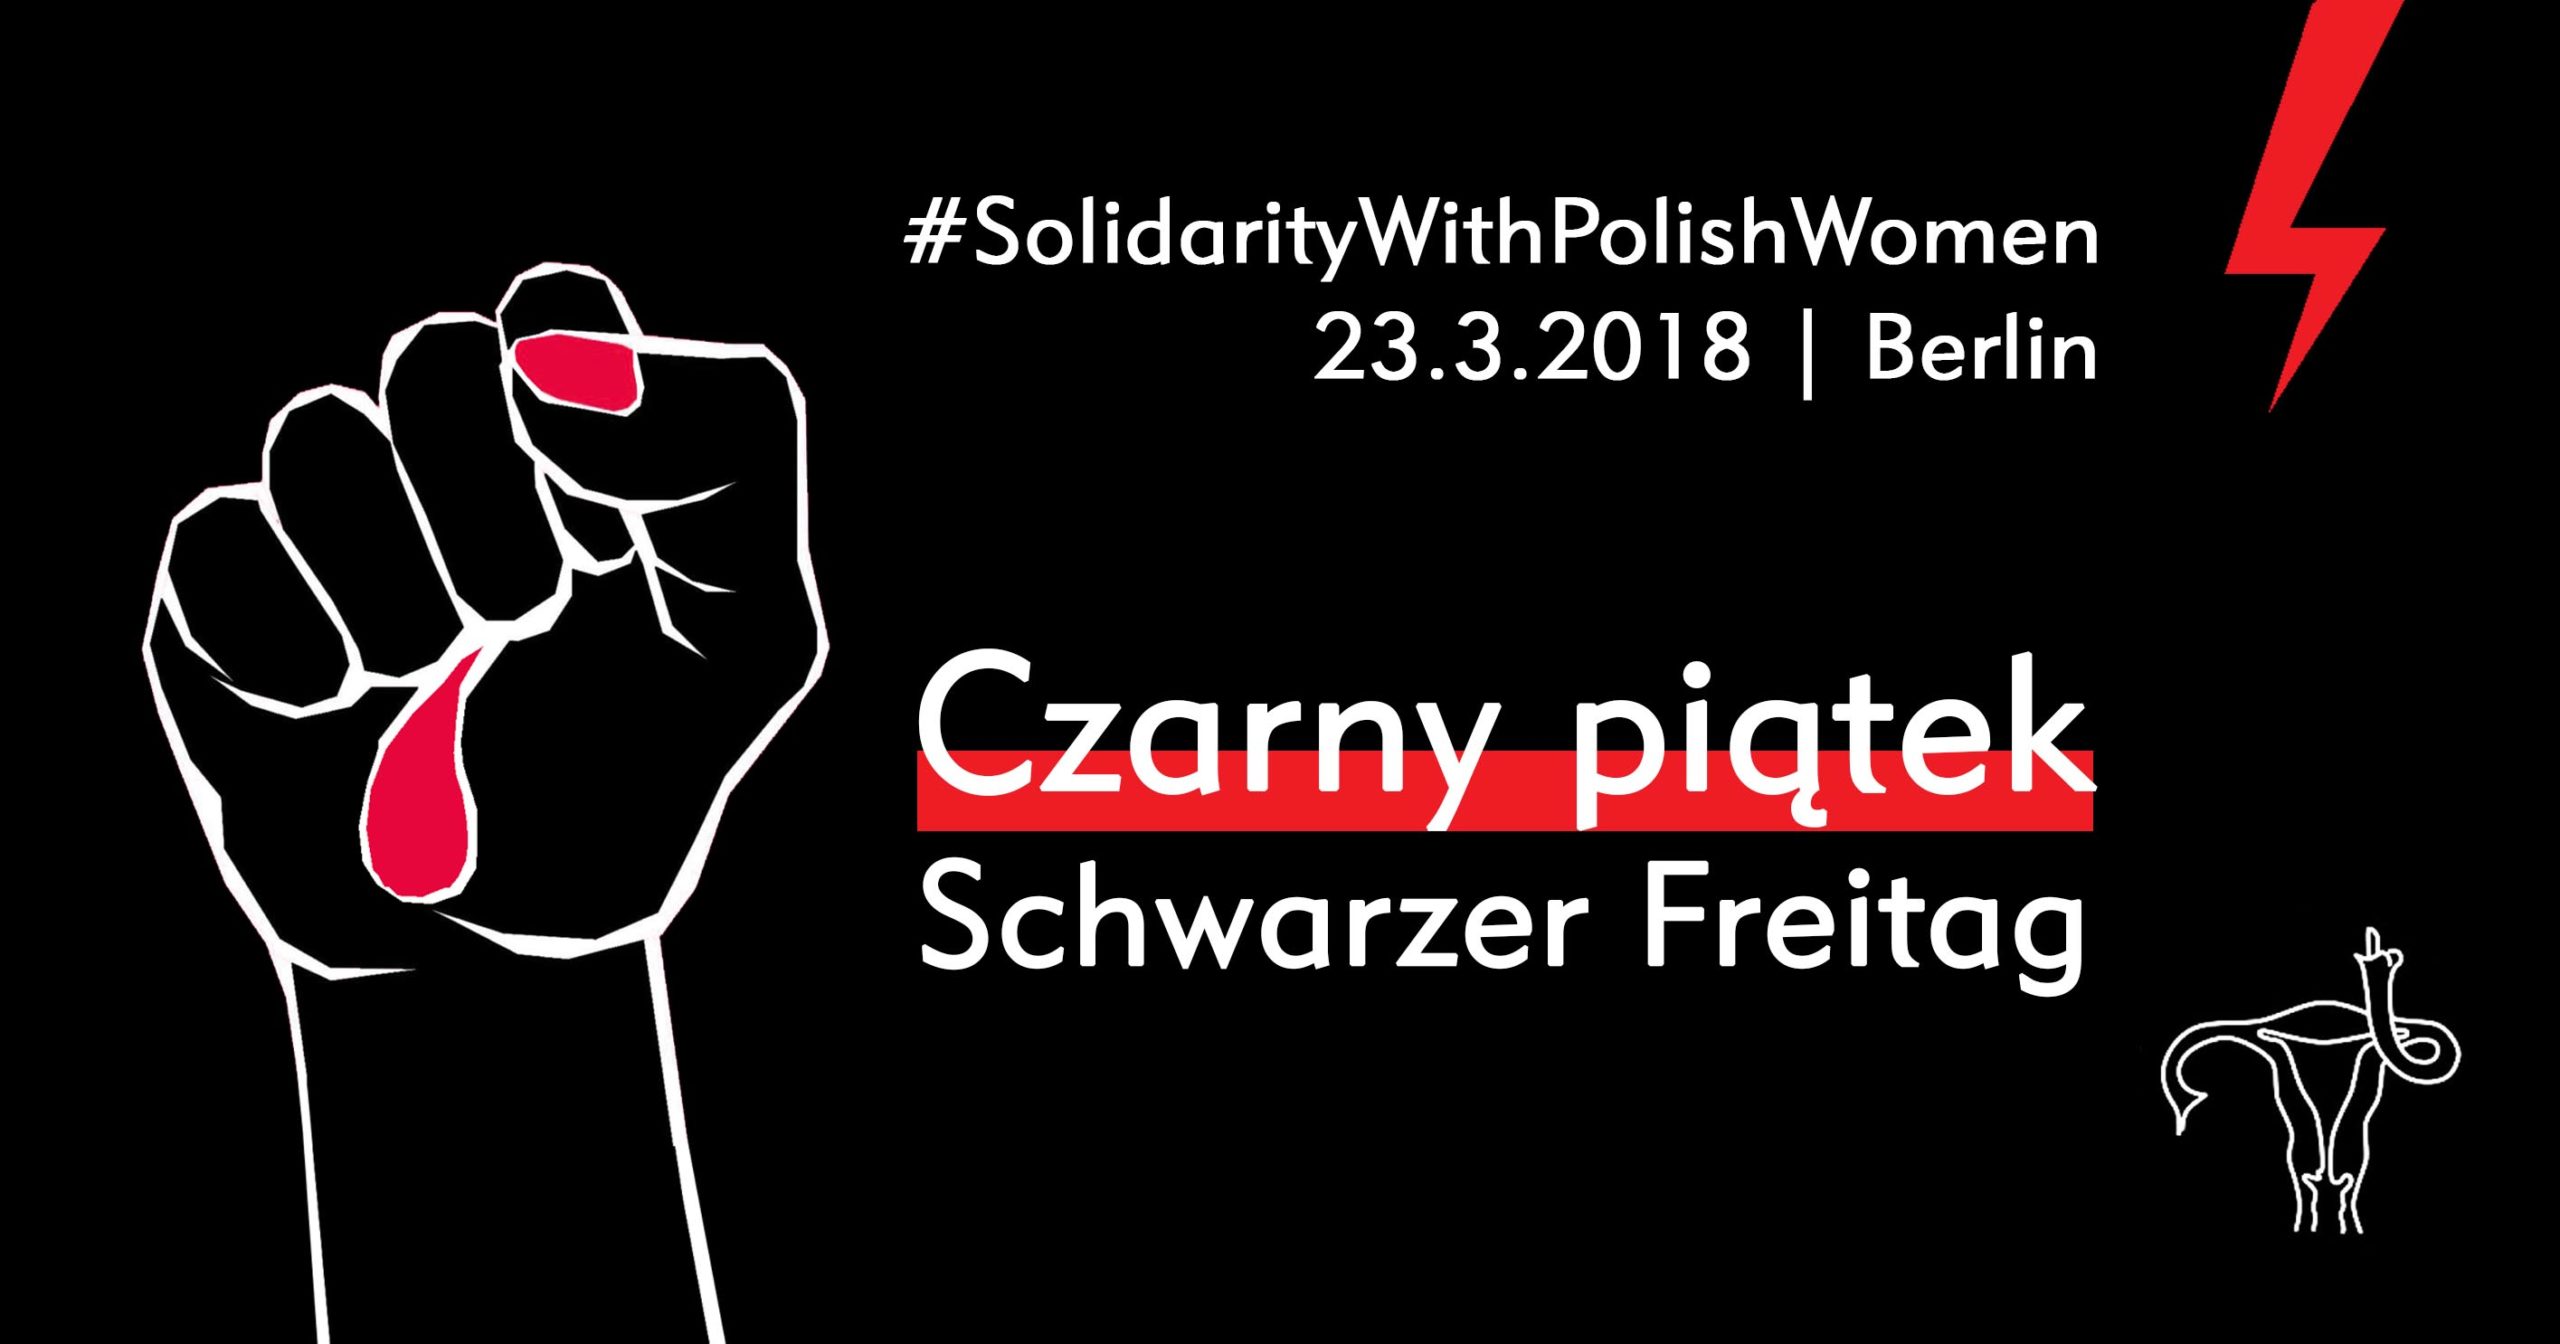 Czarny Piątek / Schwarzer Freitag – Solidarity with Polish Women